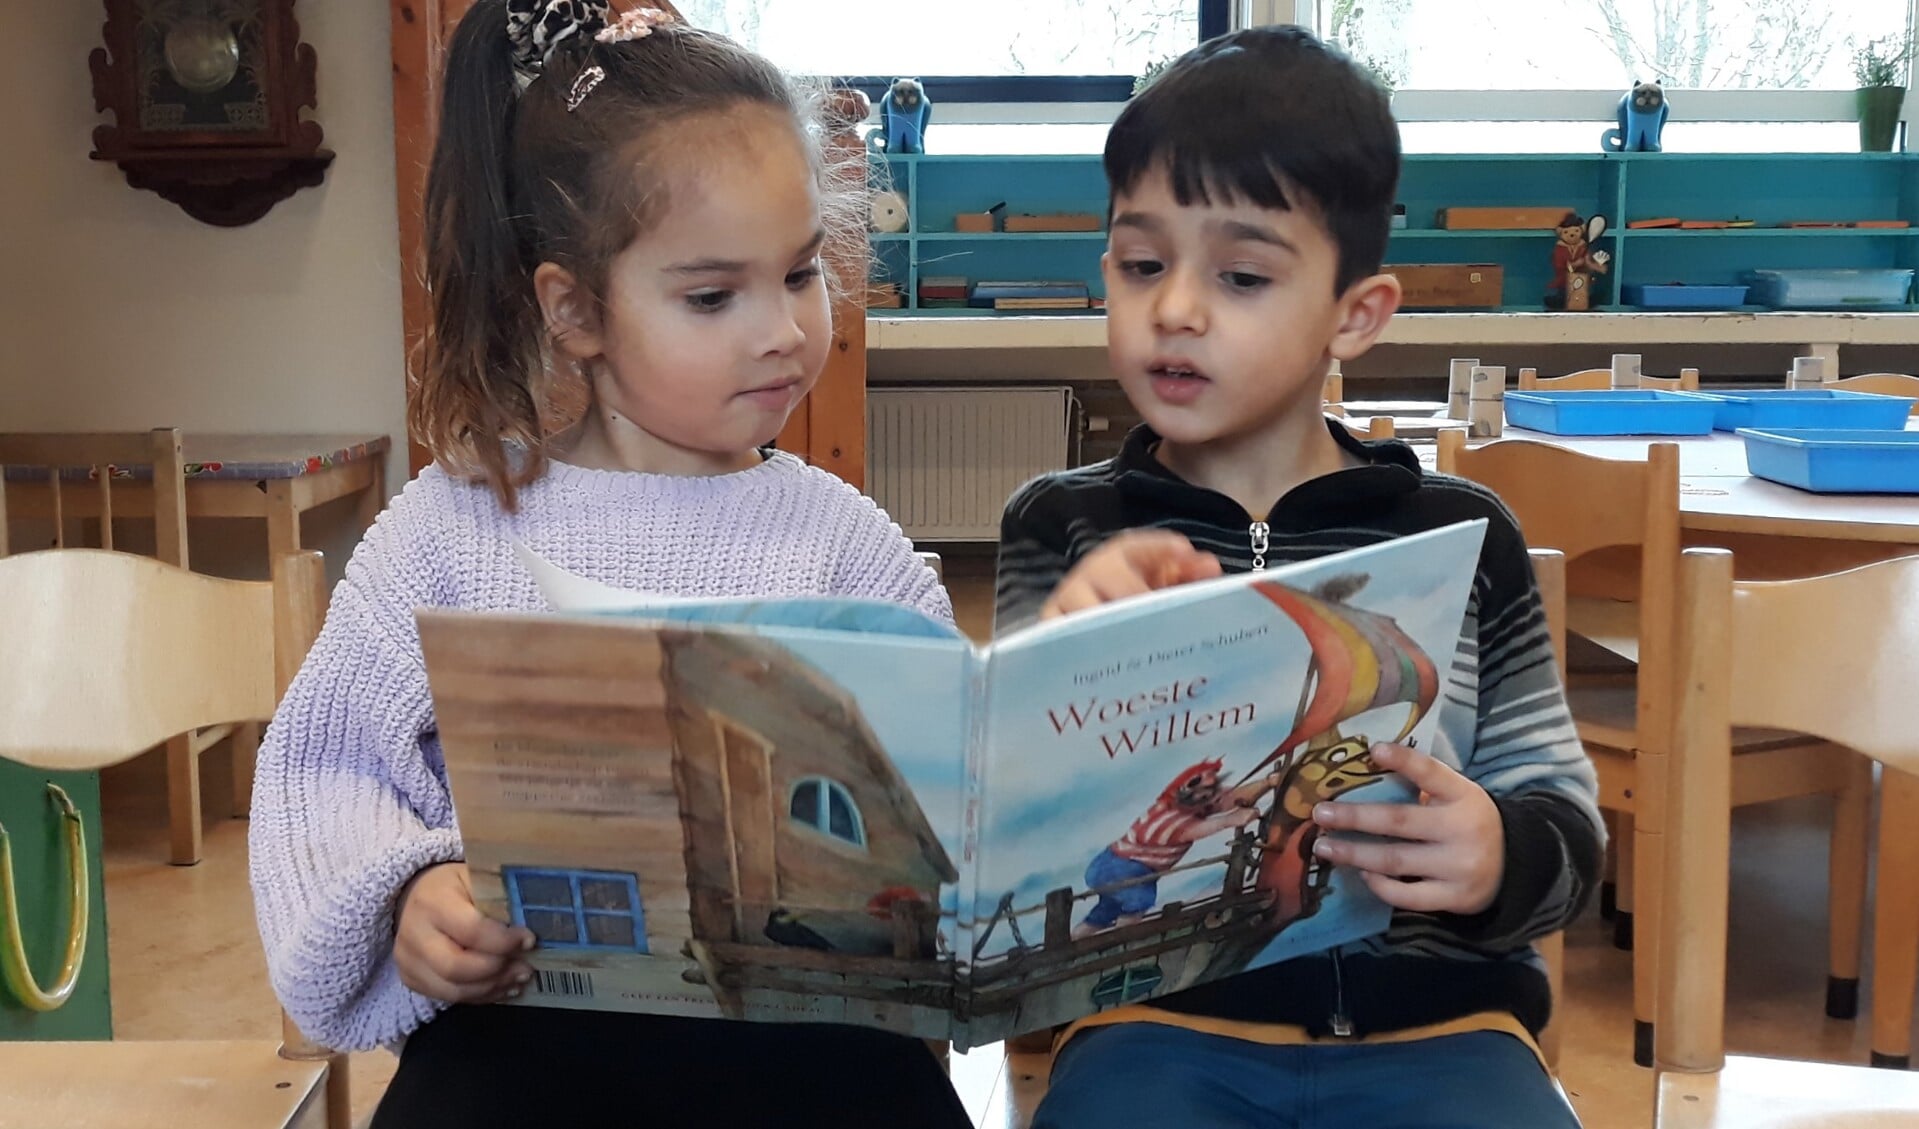 Alvast lekker lezen in het boek van Woeste Willem bij de noodopvang op kindcentrum De Duif. 